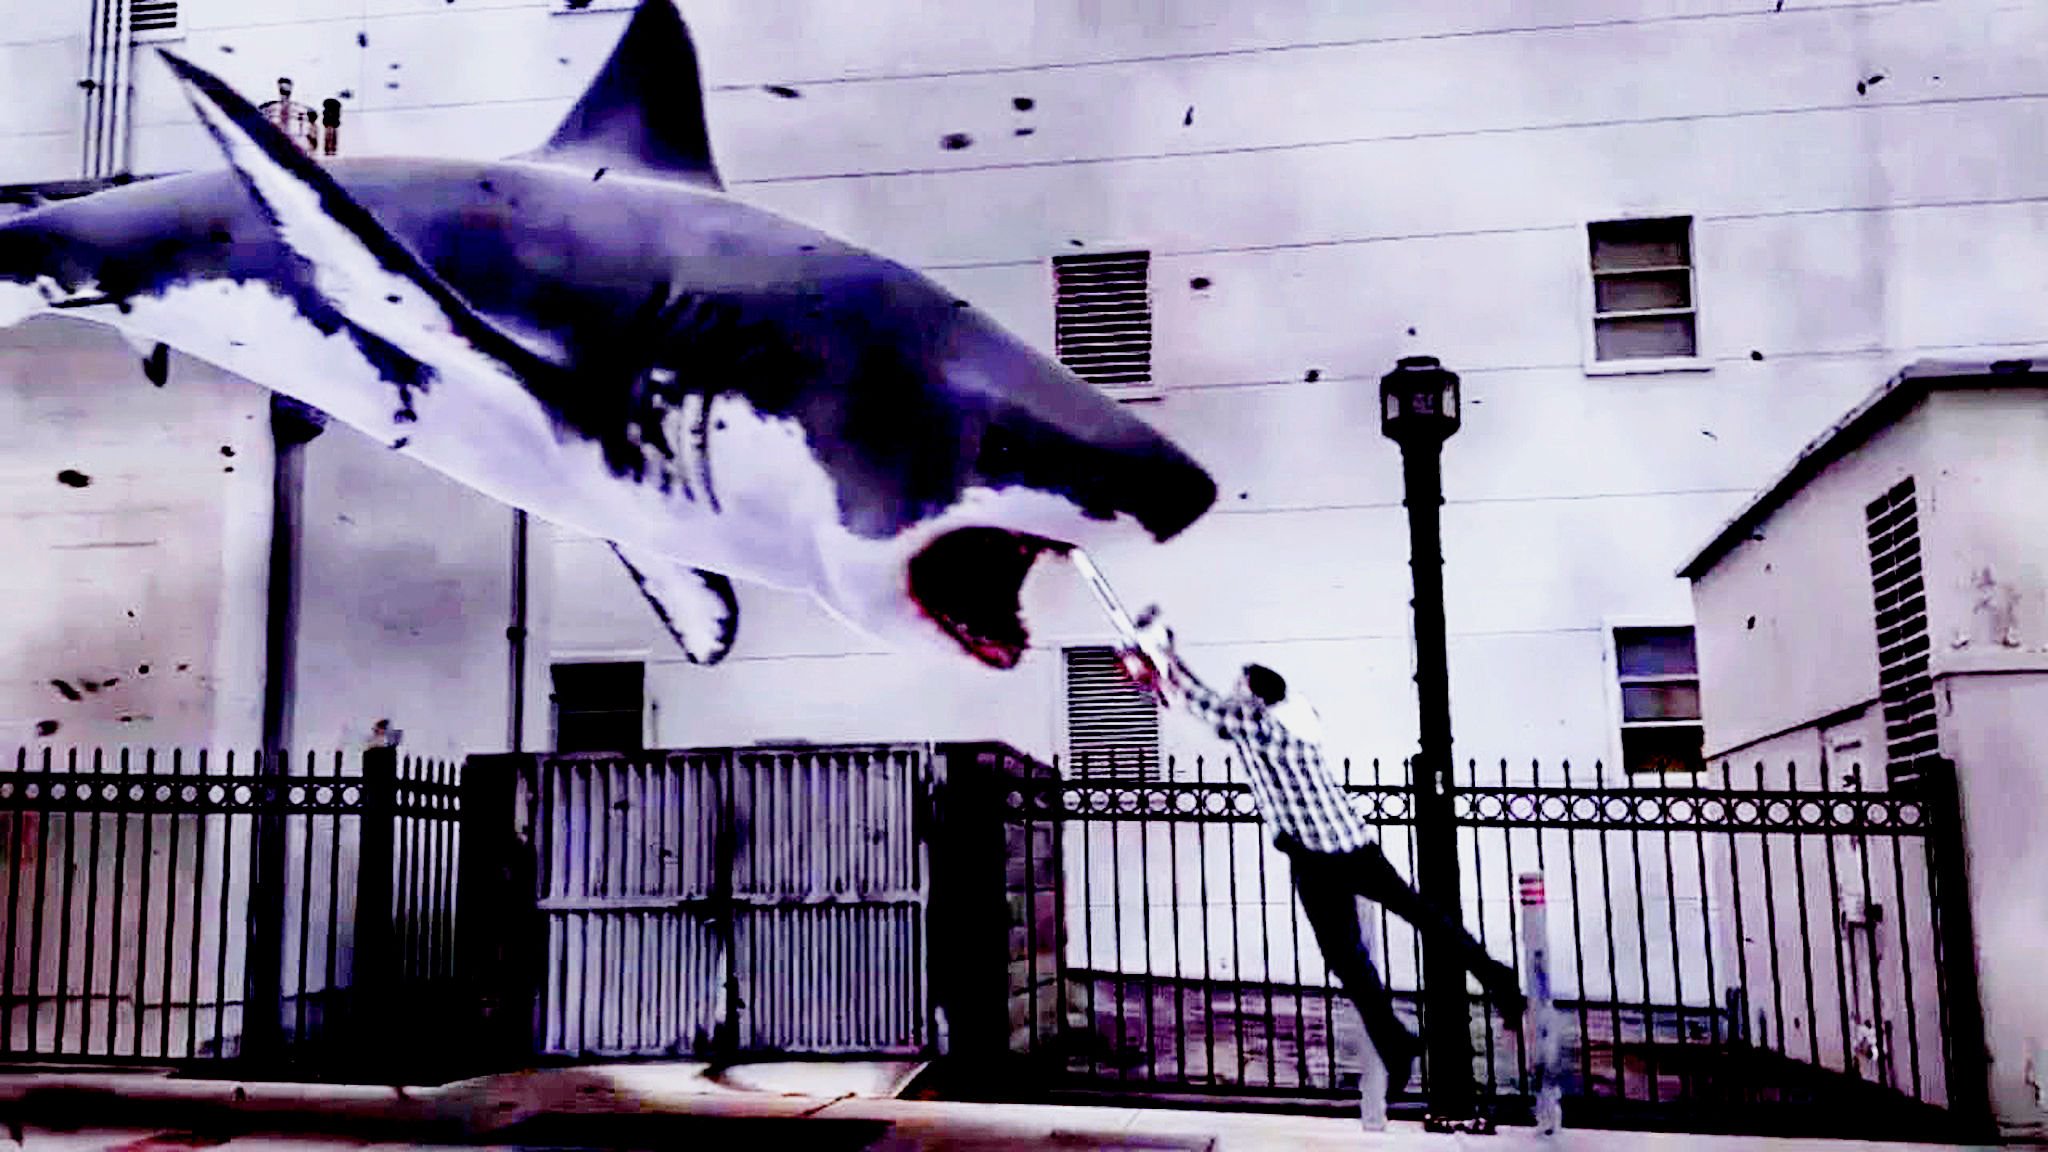 sharknado wallpaper,street art,cartilaginous fish,shark,fish,mural